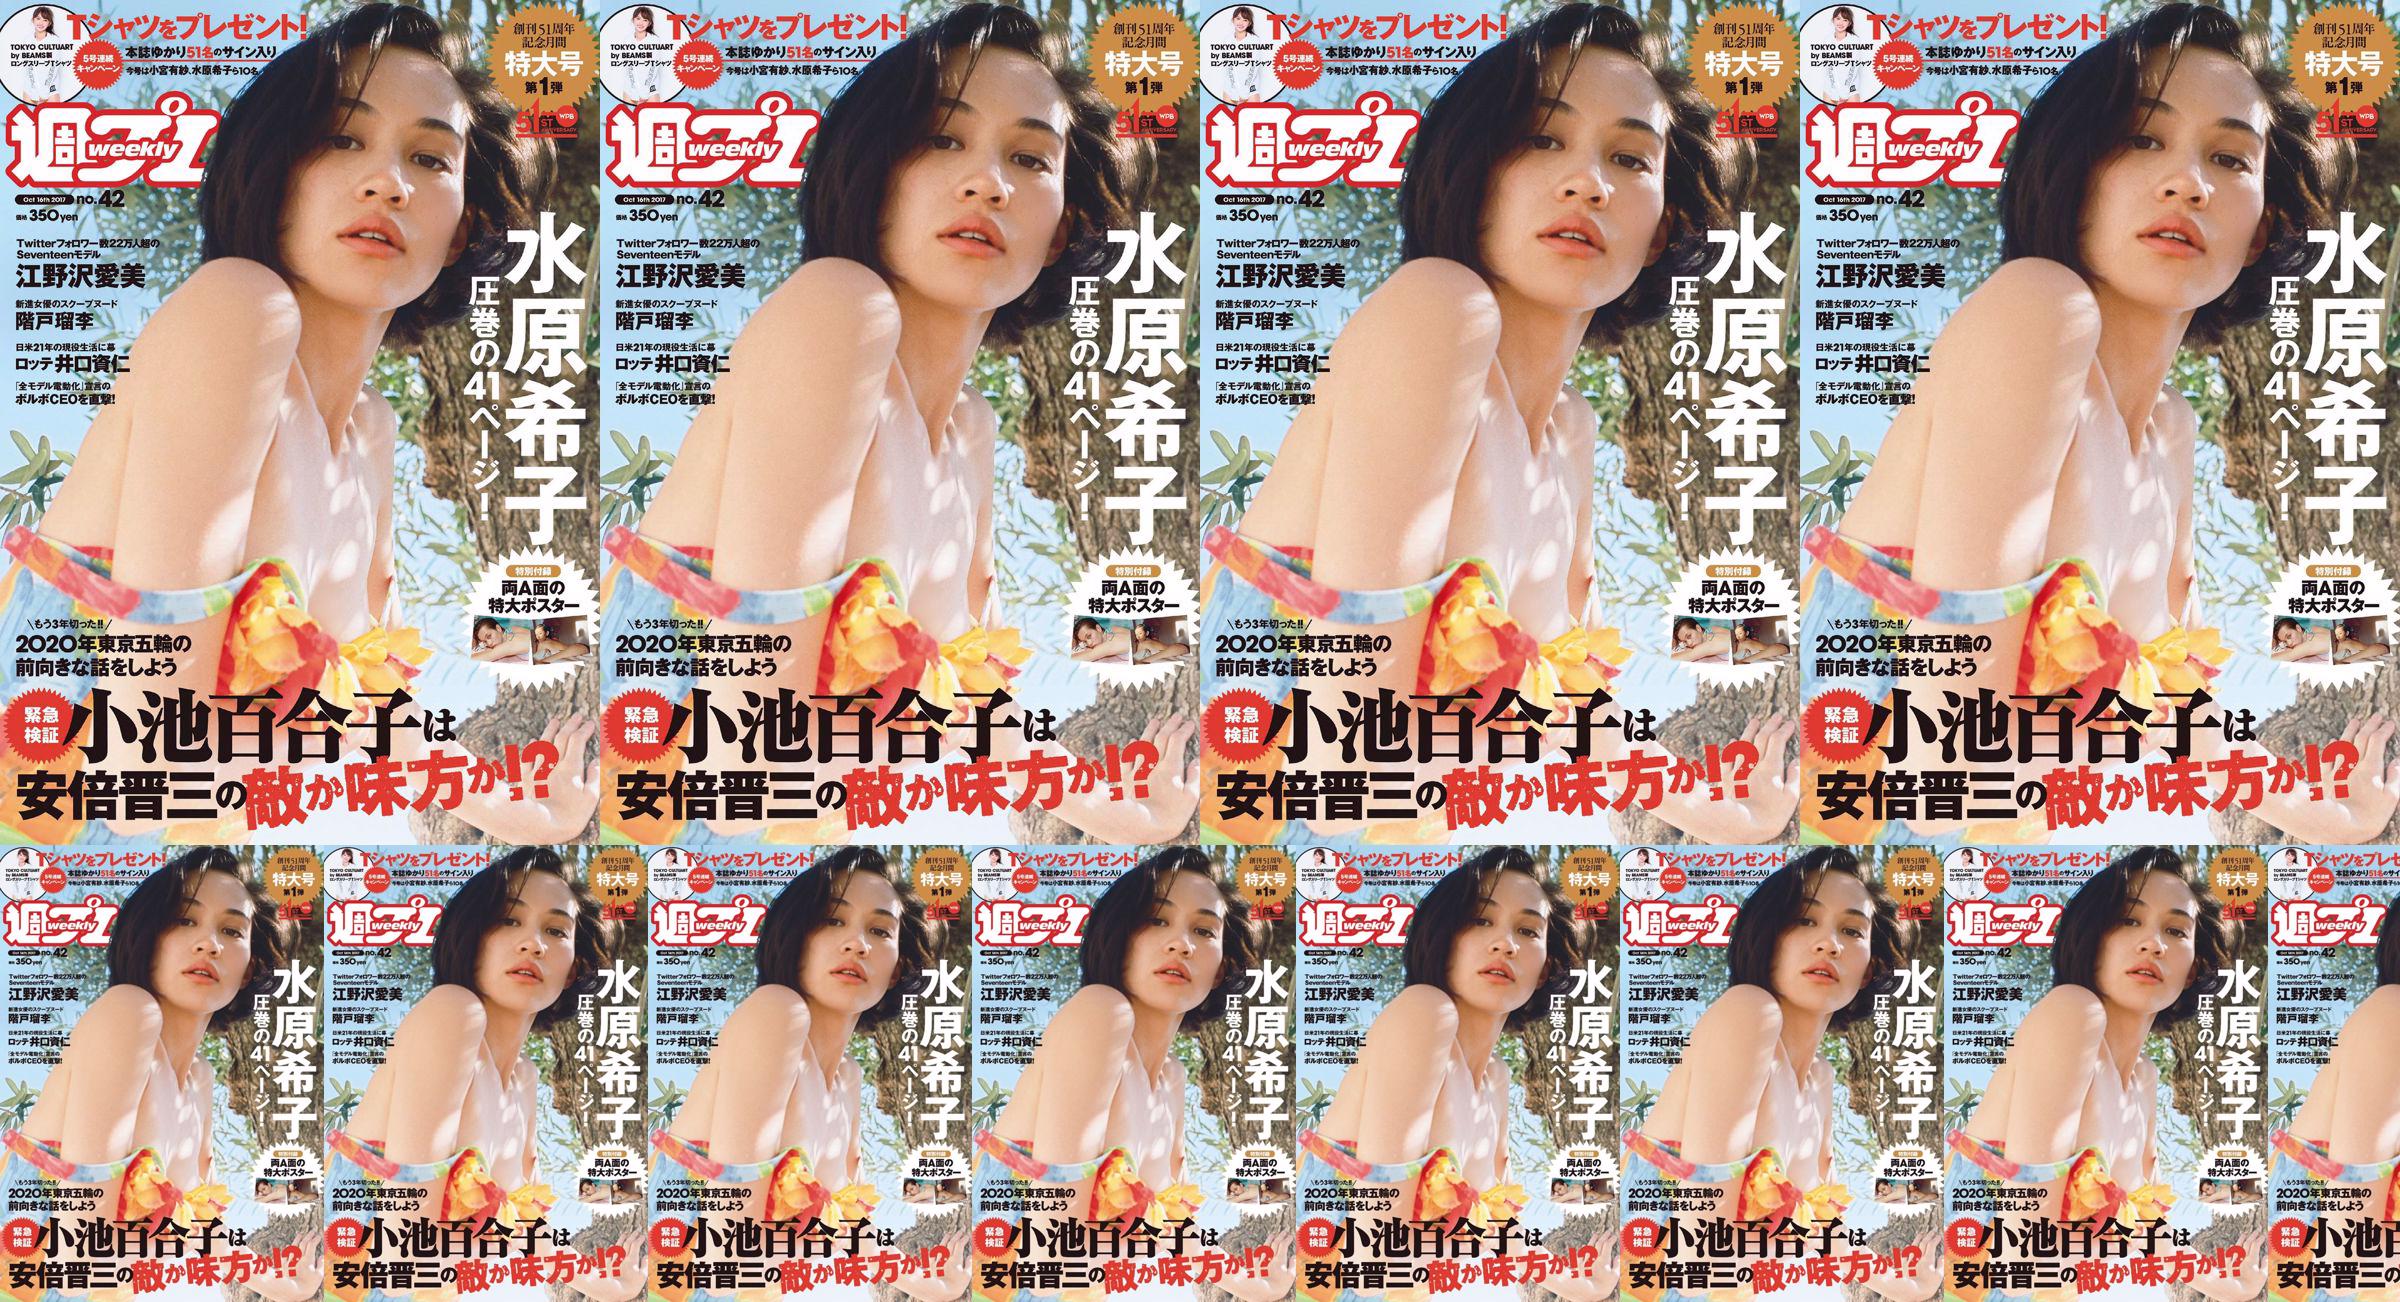 Kiko Mizuhara Manami Enosawa Serina Fukui Miu Nakamura Ruri Shinato [Weekly Playboy] 2017 No.42 Photo Magazine No.e550b1 Trang 3